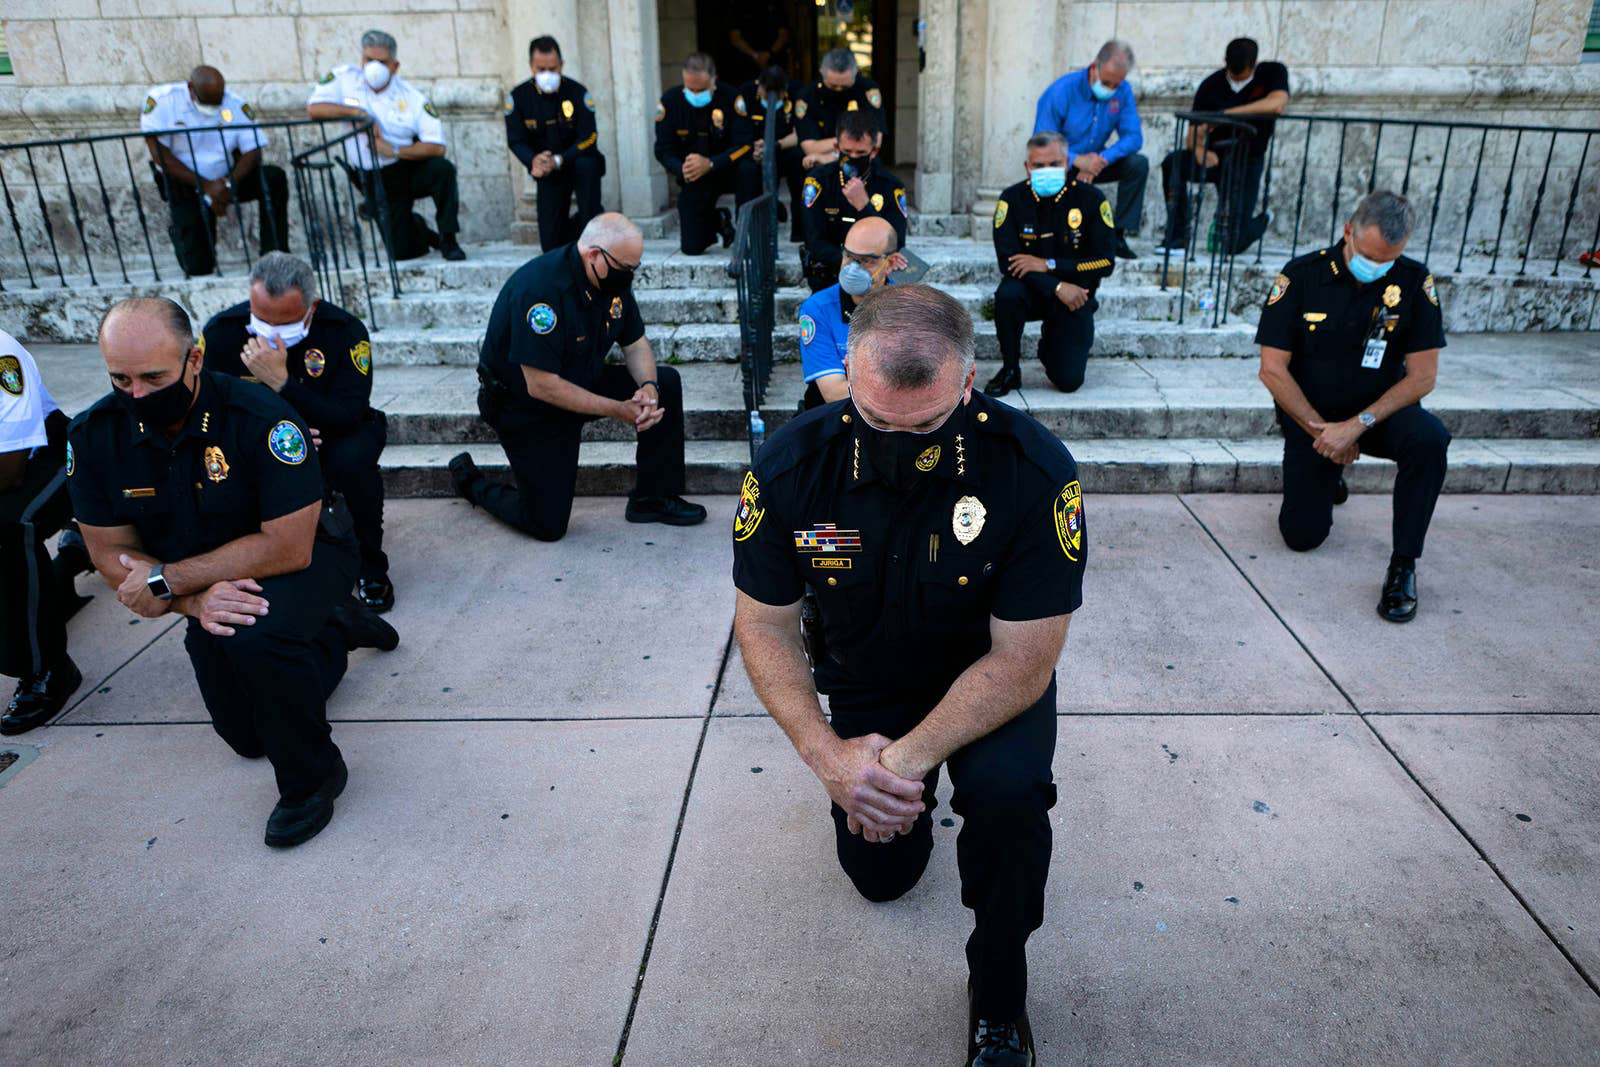 Vứt bỏ dùi cui, cảnh sát quỳ gối và ôm những người biểu tình, thể hiện sự đoàn kết mà nước Mỹ rất cần ngay lúc này - Ảnh 1.